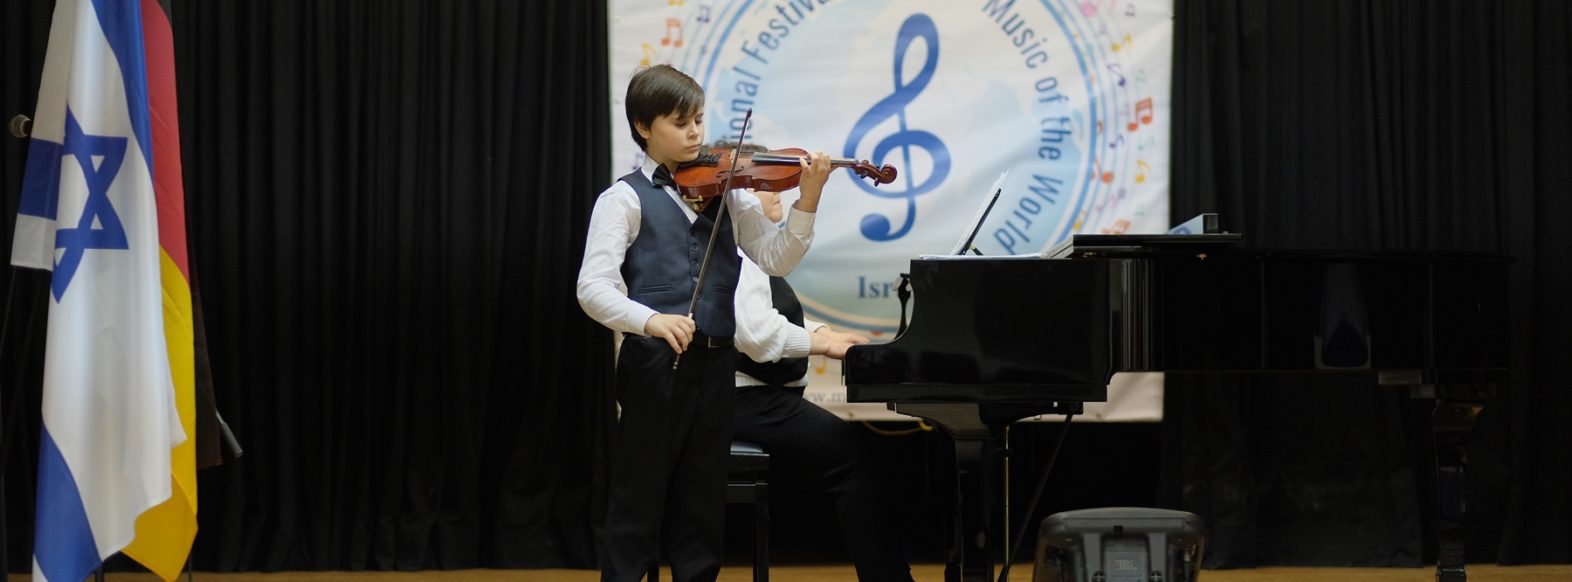 ולדימיר פופוב, תלמיד מרכז המוסיקה העירוני זכה במקום השני בתחרות מוסיקה בינלאומית